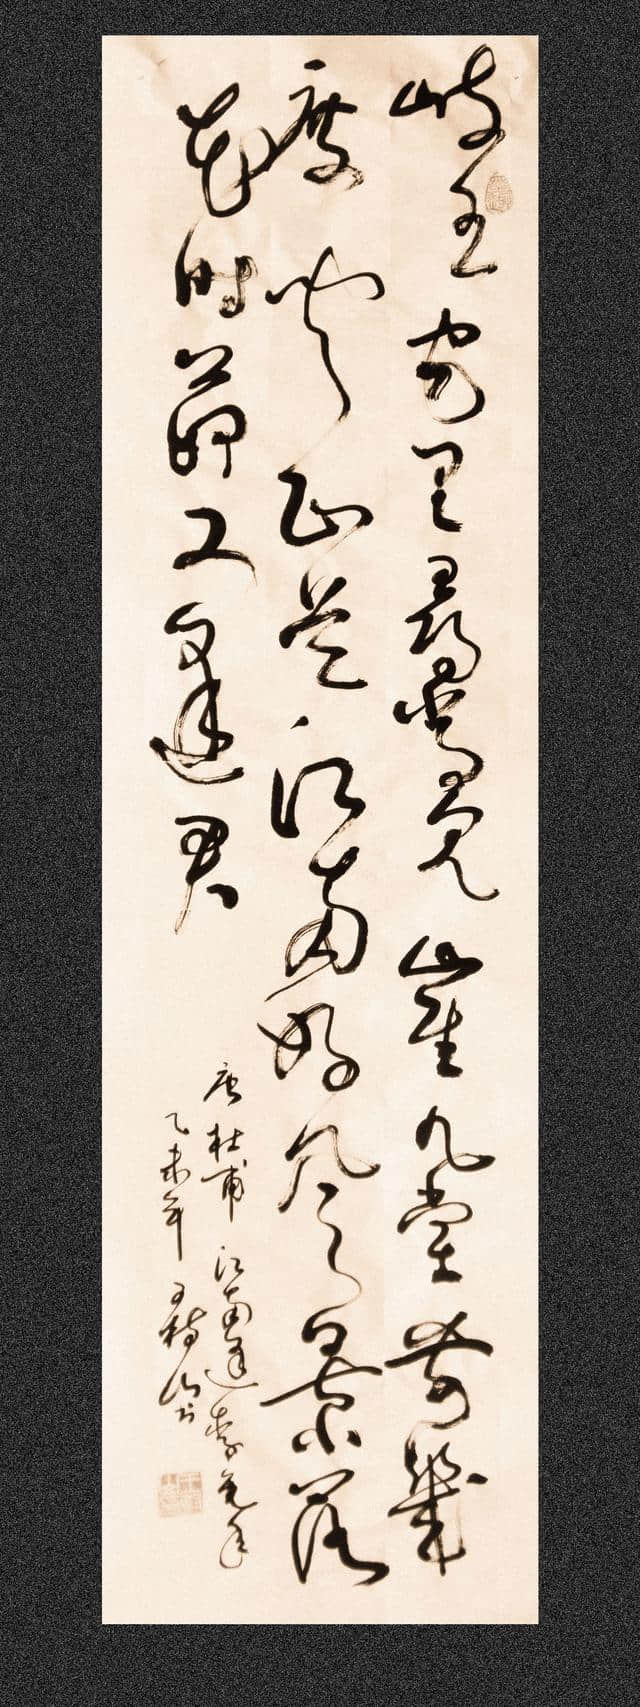 王树山书法草书，被誉为“七律之冠”的《登高》诗等8首